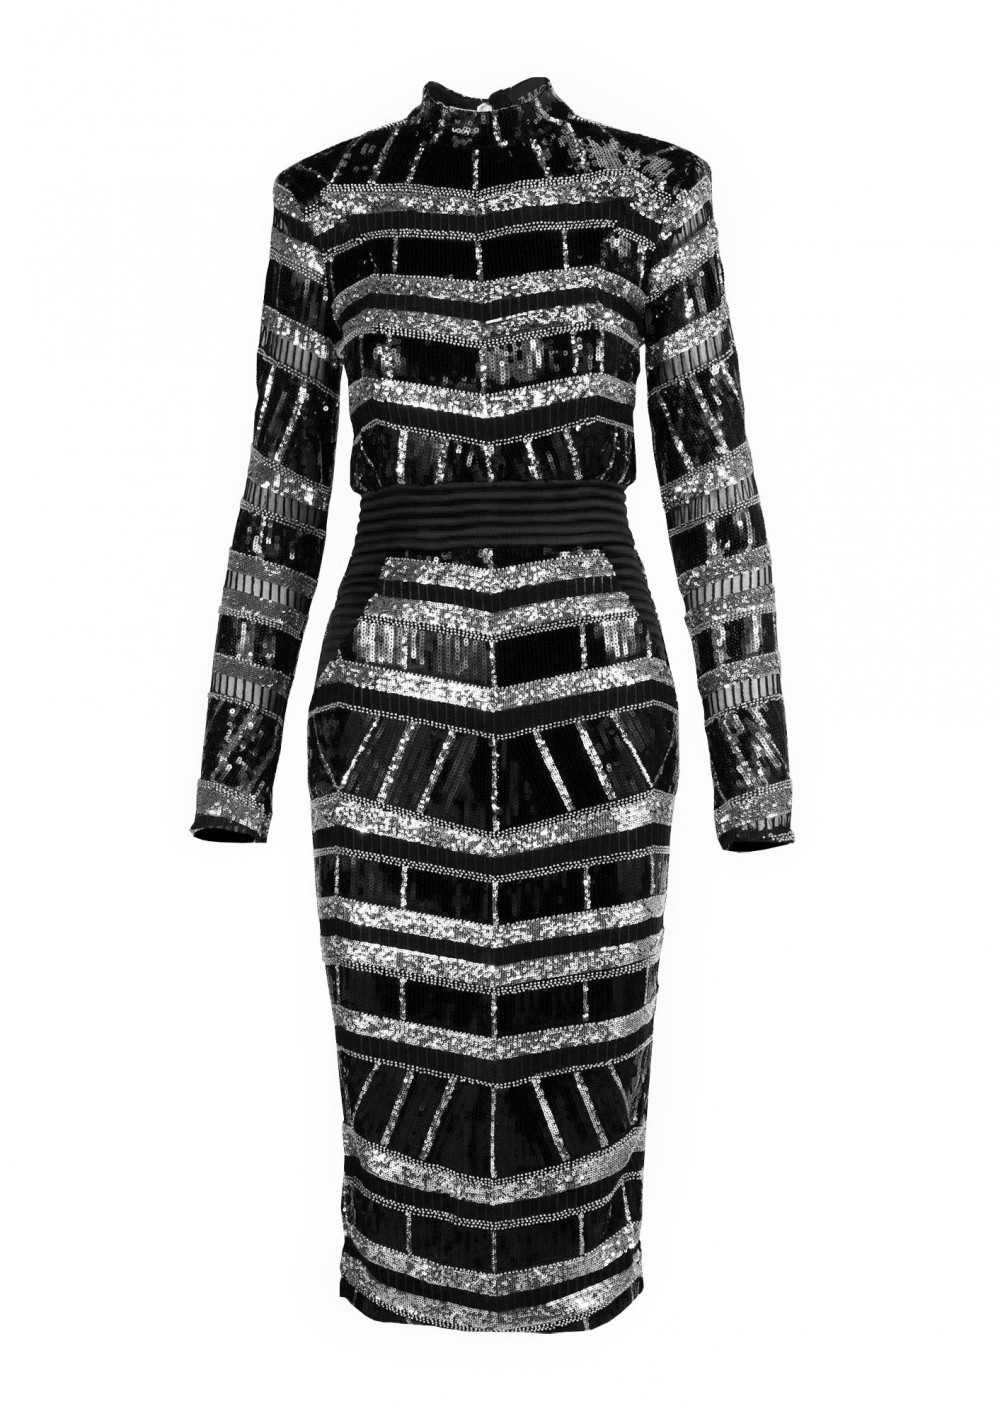 ZHIVAGO Illume Midi Dress in Black and Silver | THE-PRIVATE-LABEL.COM